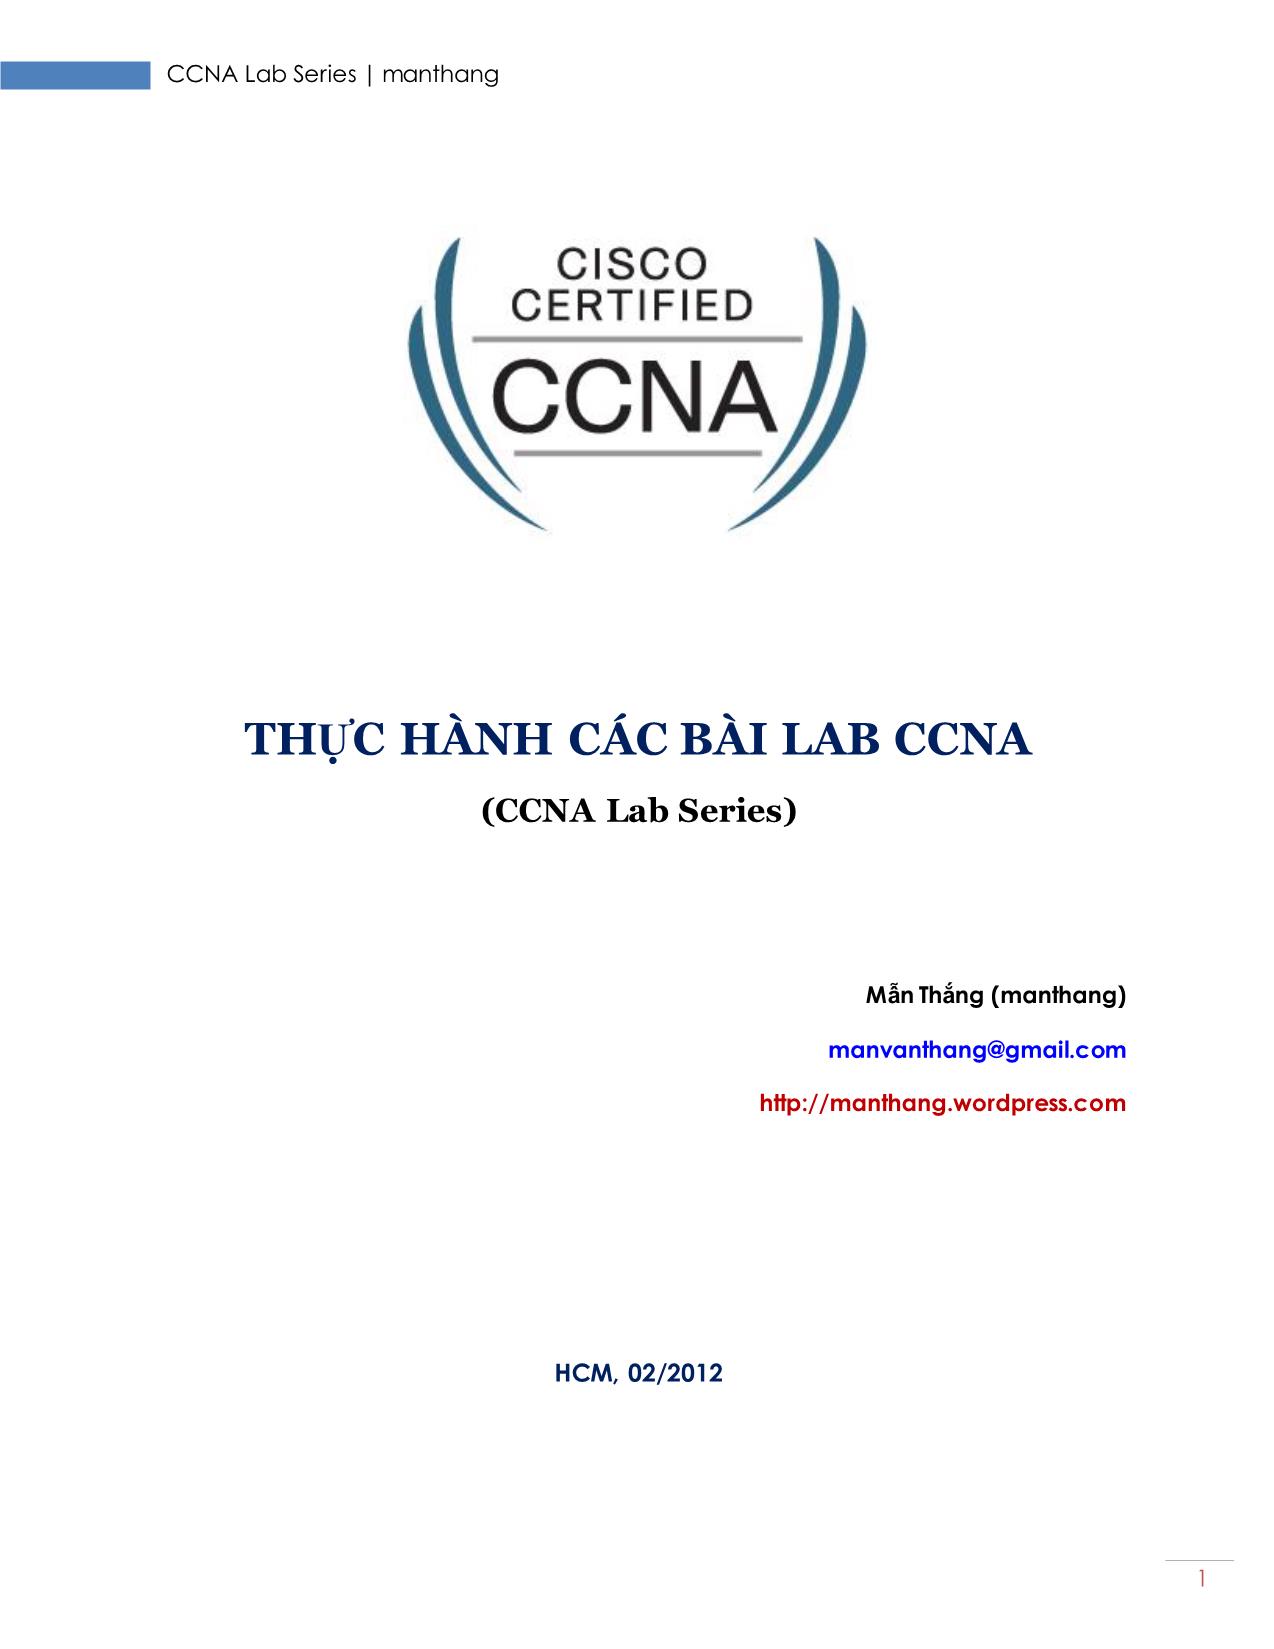 Thực hành các bài Lab CCNA trang 1